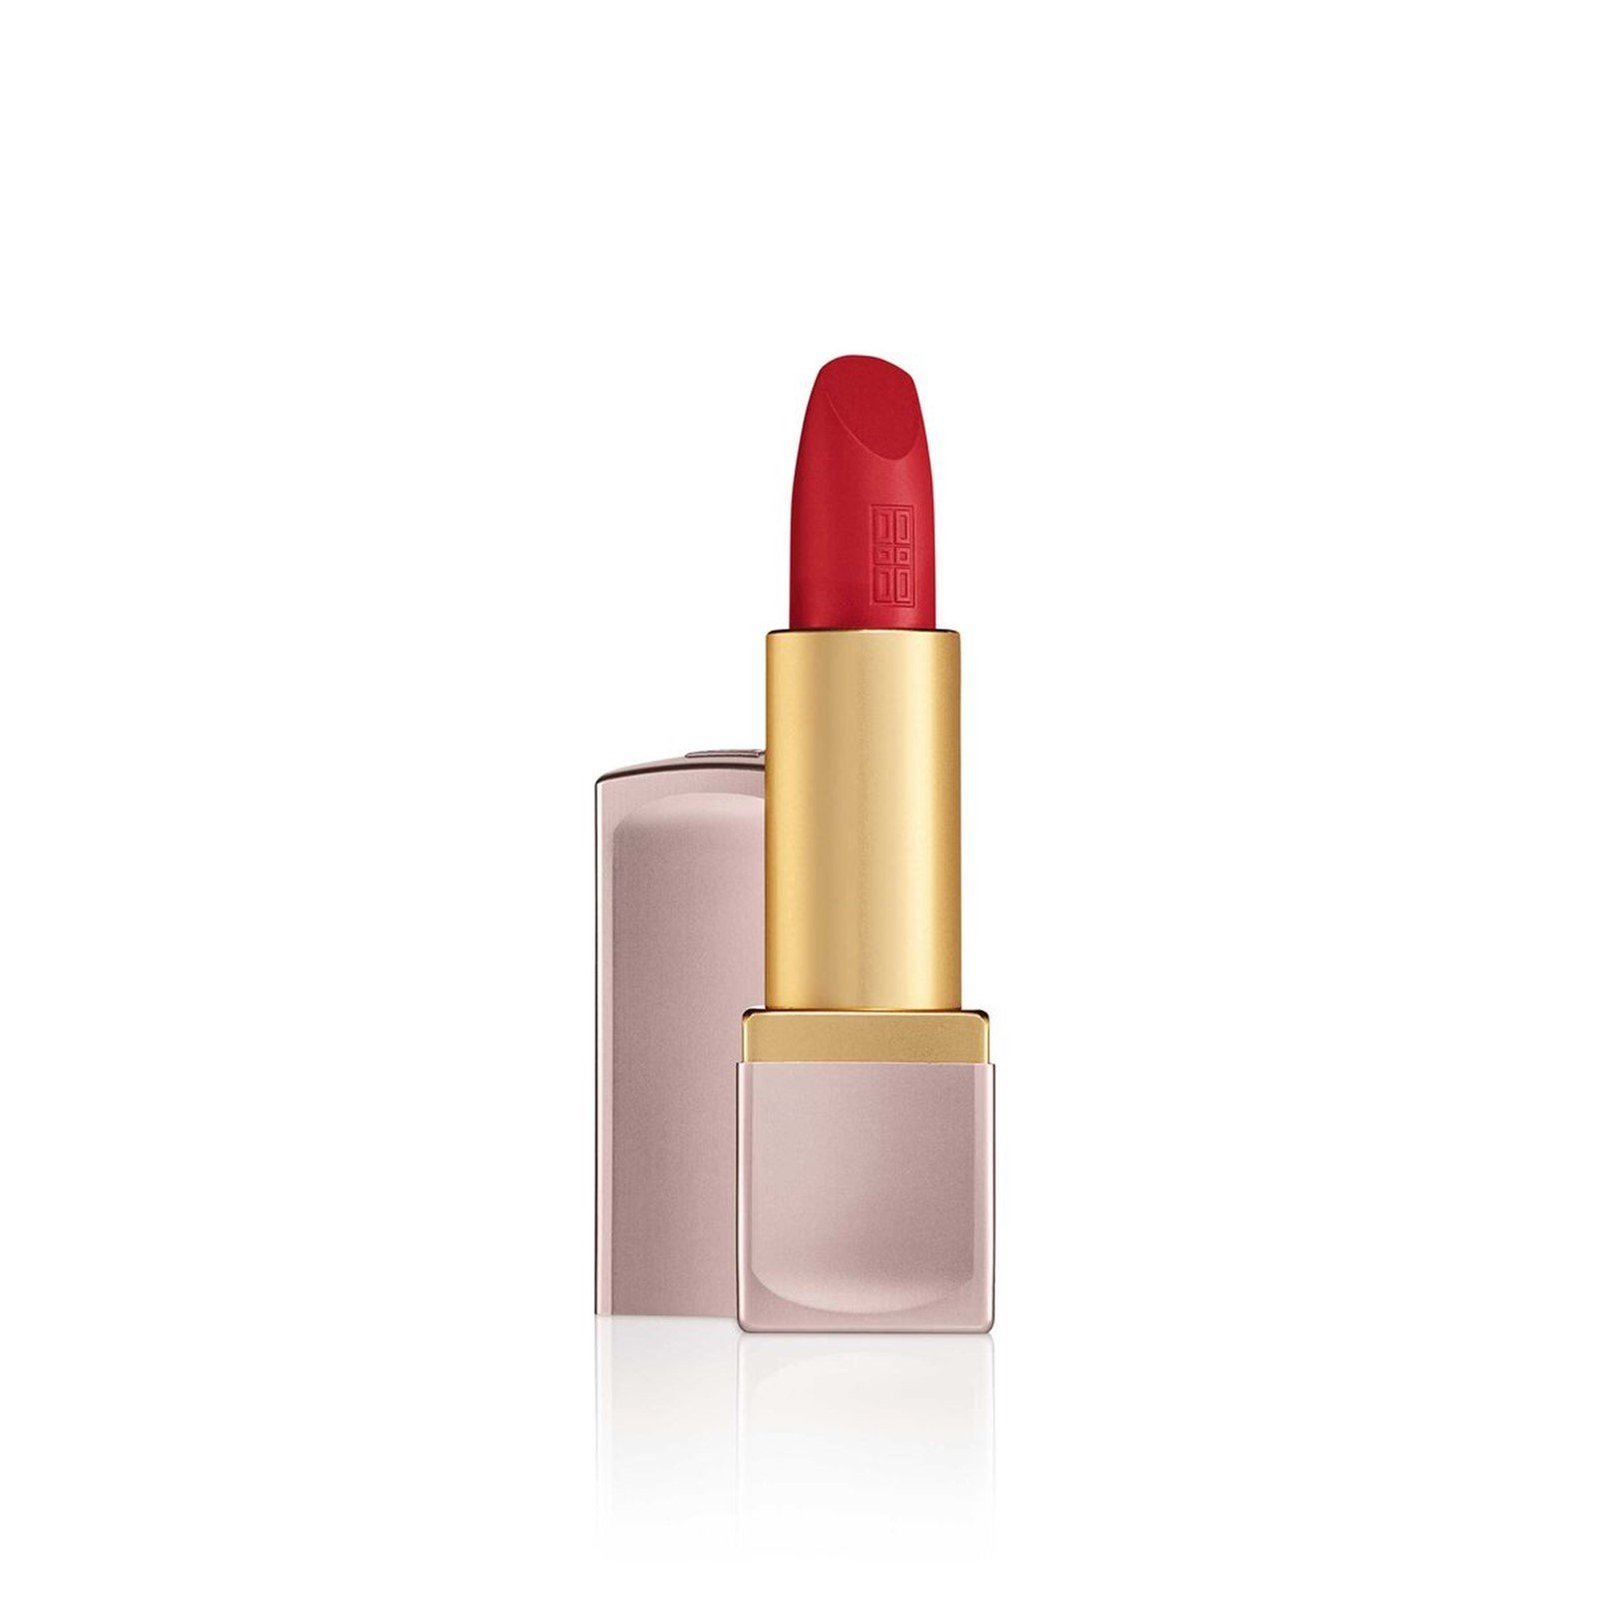 Elizabeth Arden Lip Color Lipstick 08 Statement Red Matte 4g (0.14 oz)